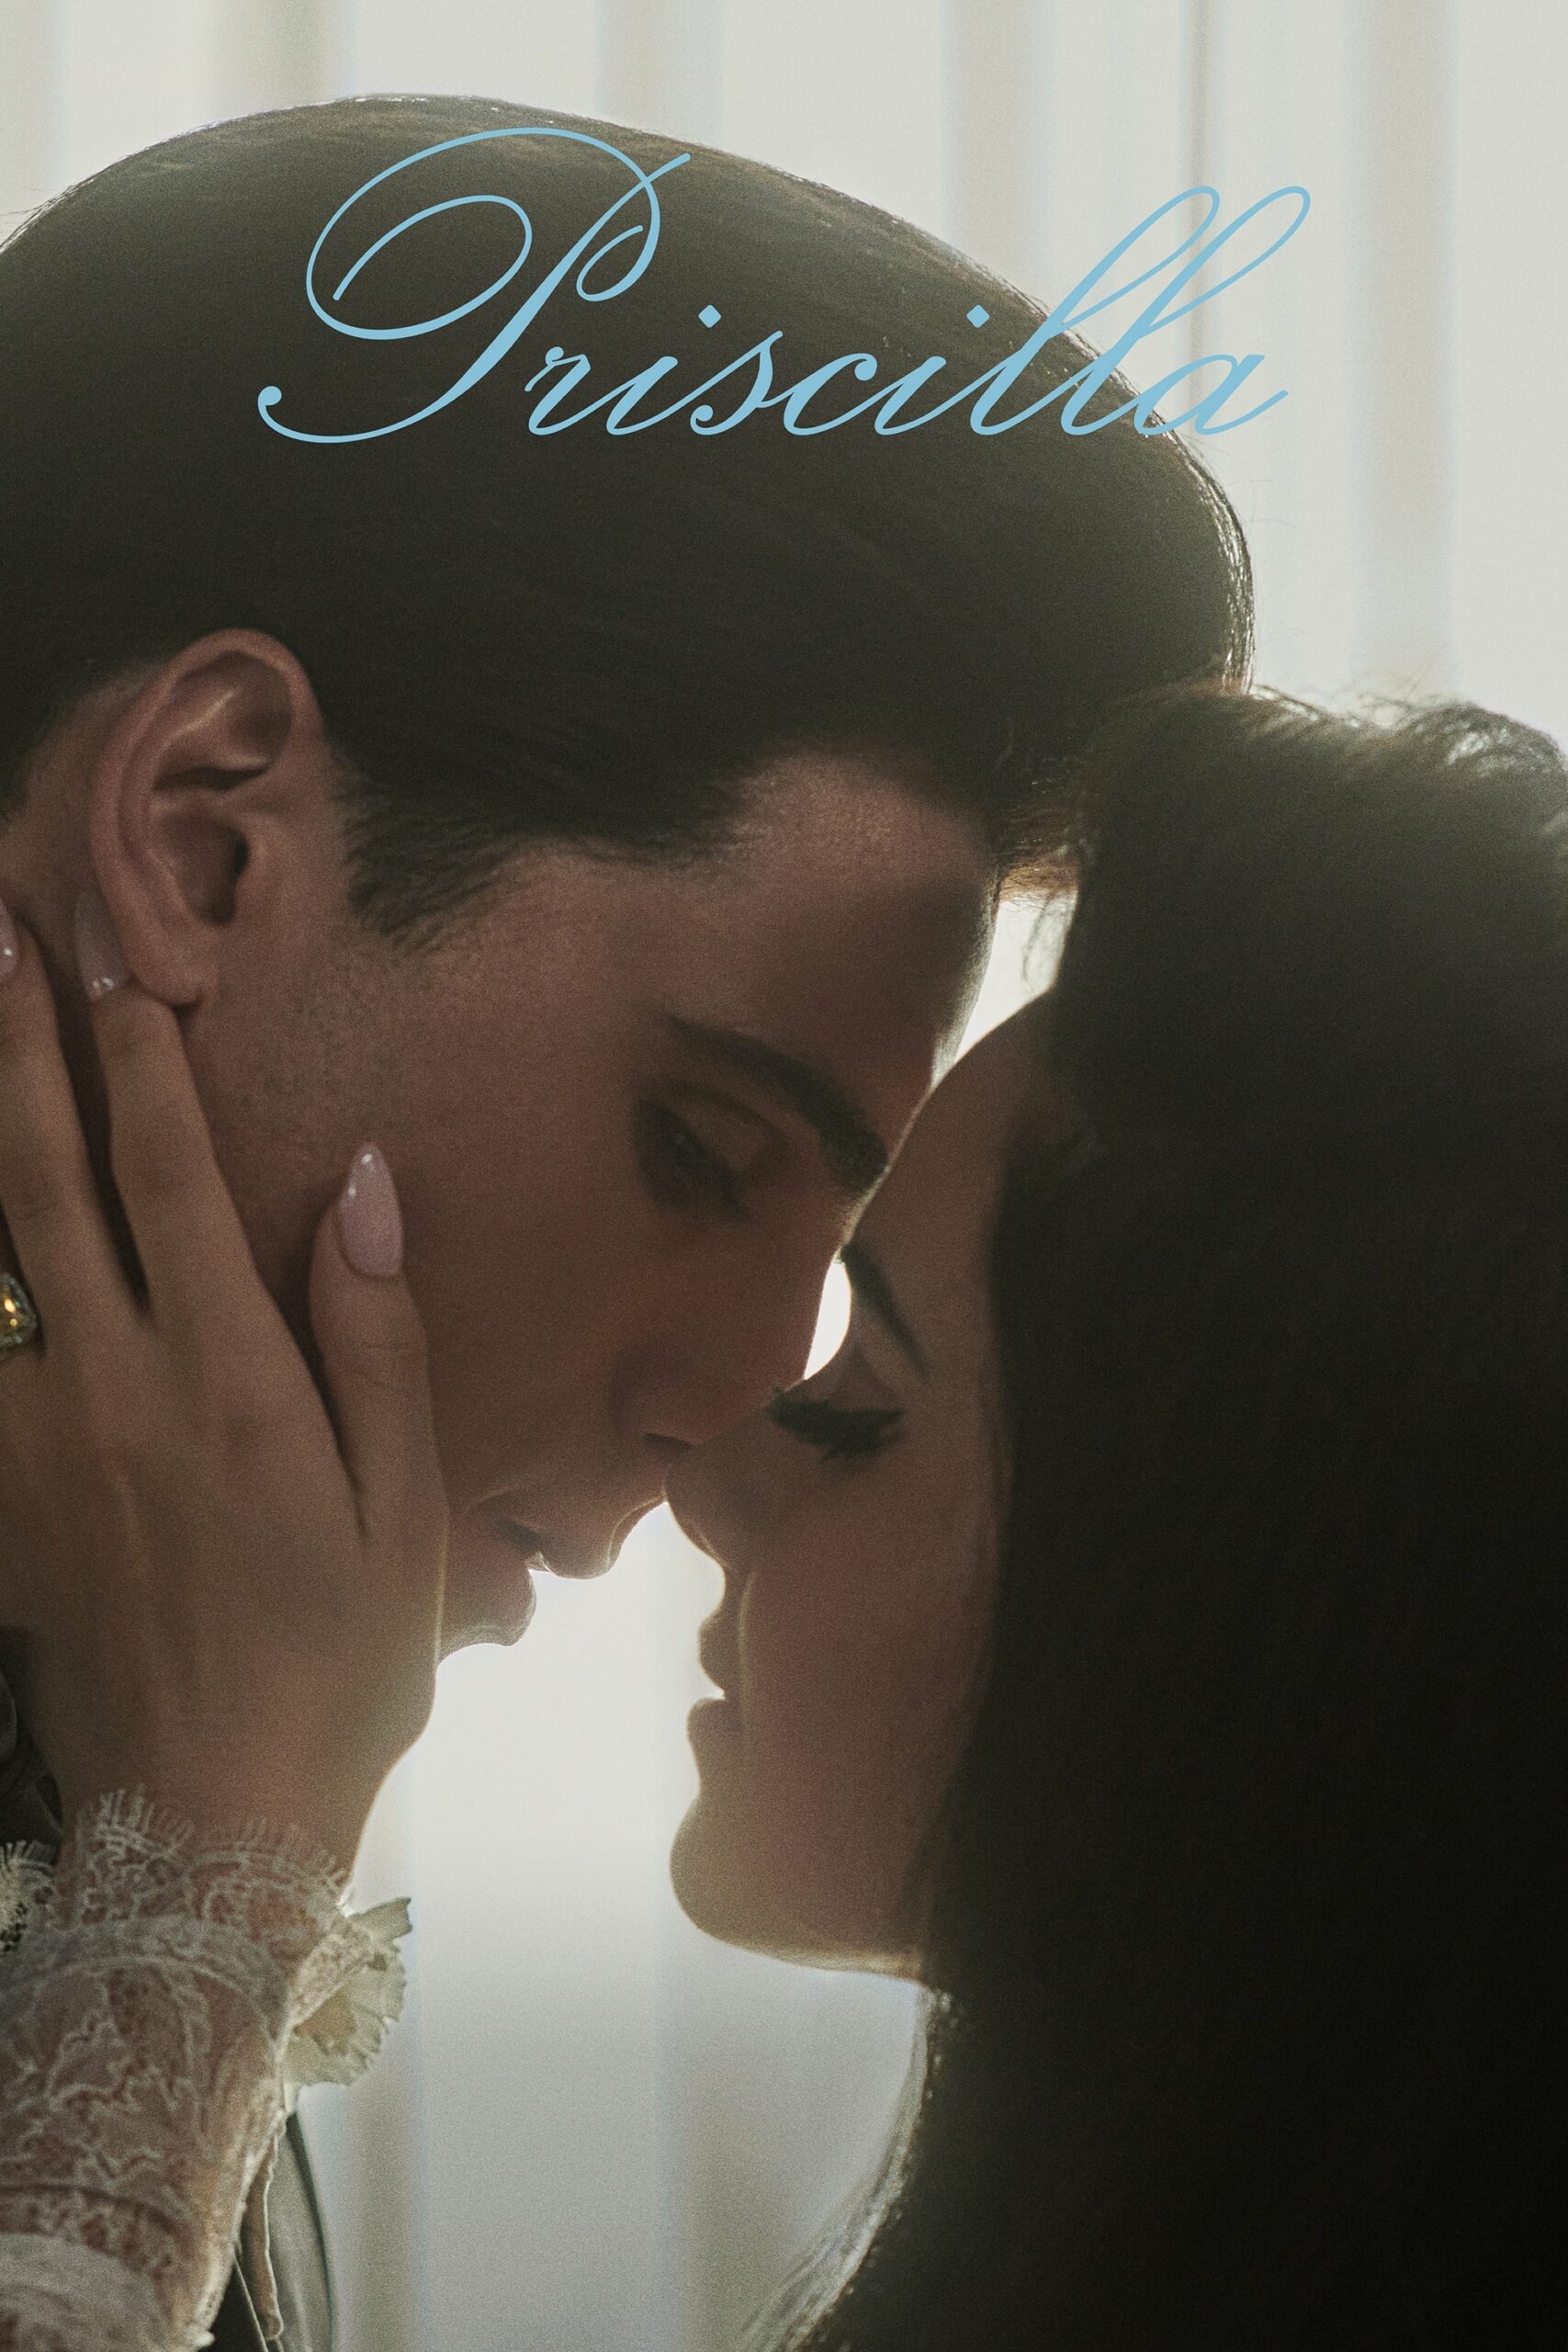 Poster for the movie "Priscilla"